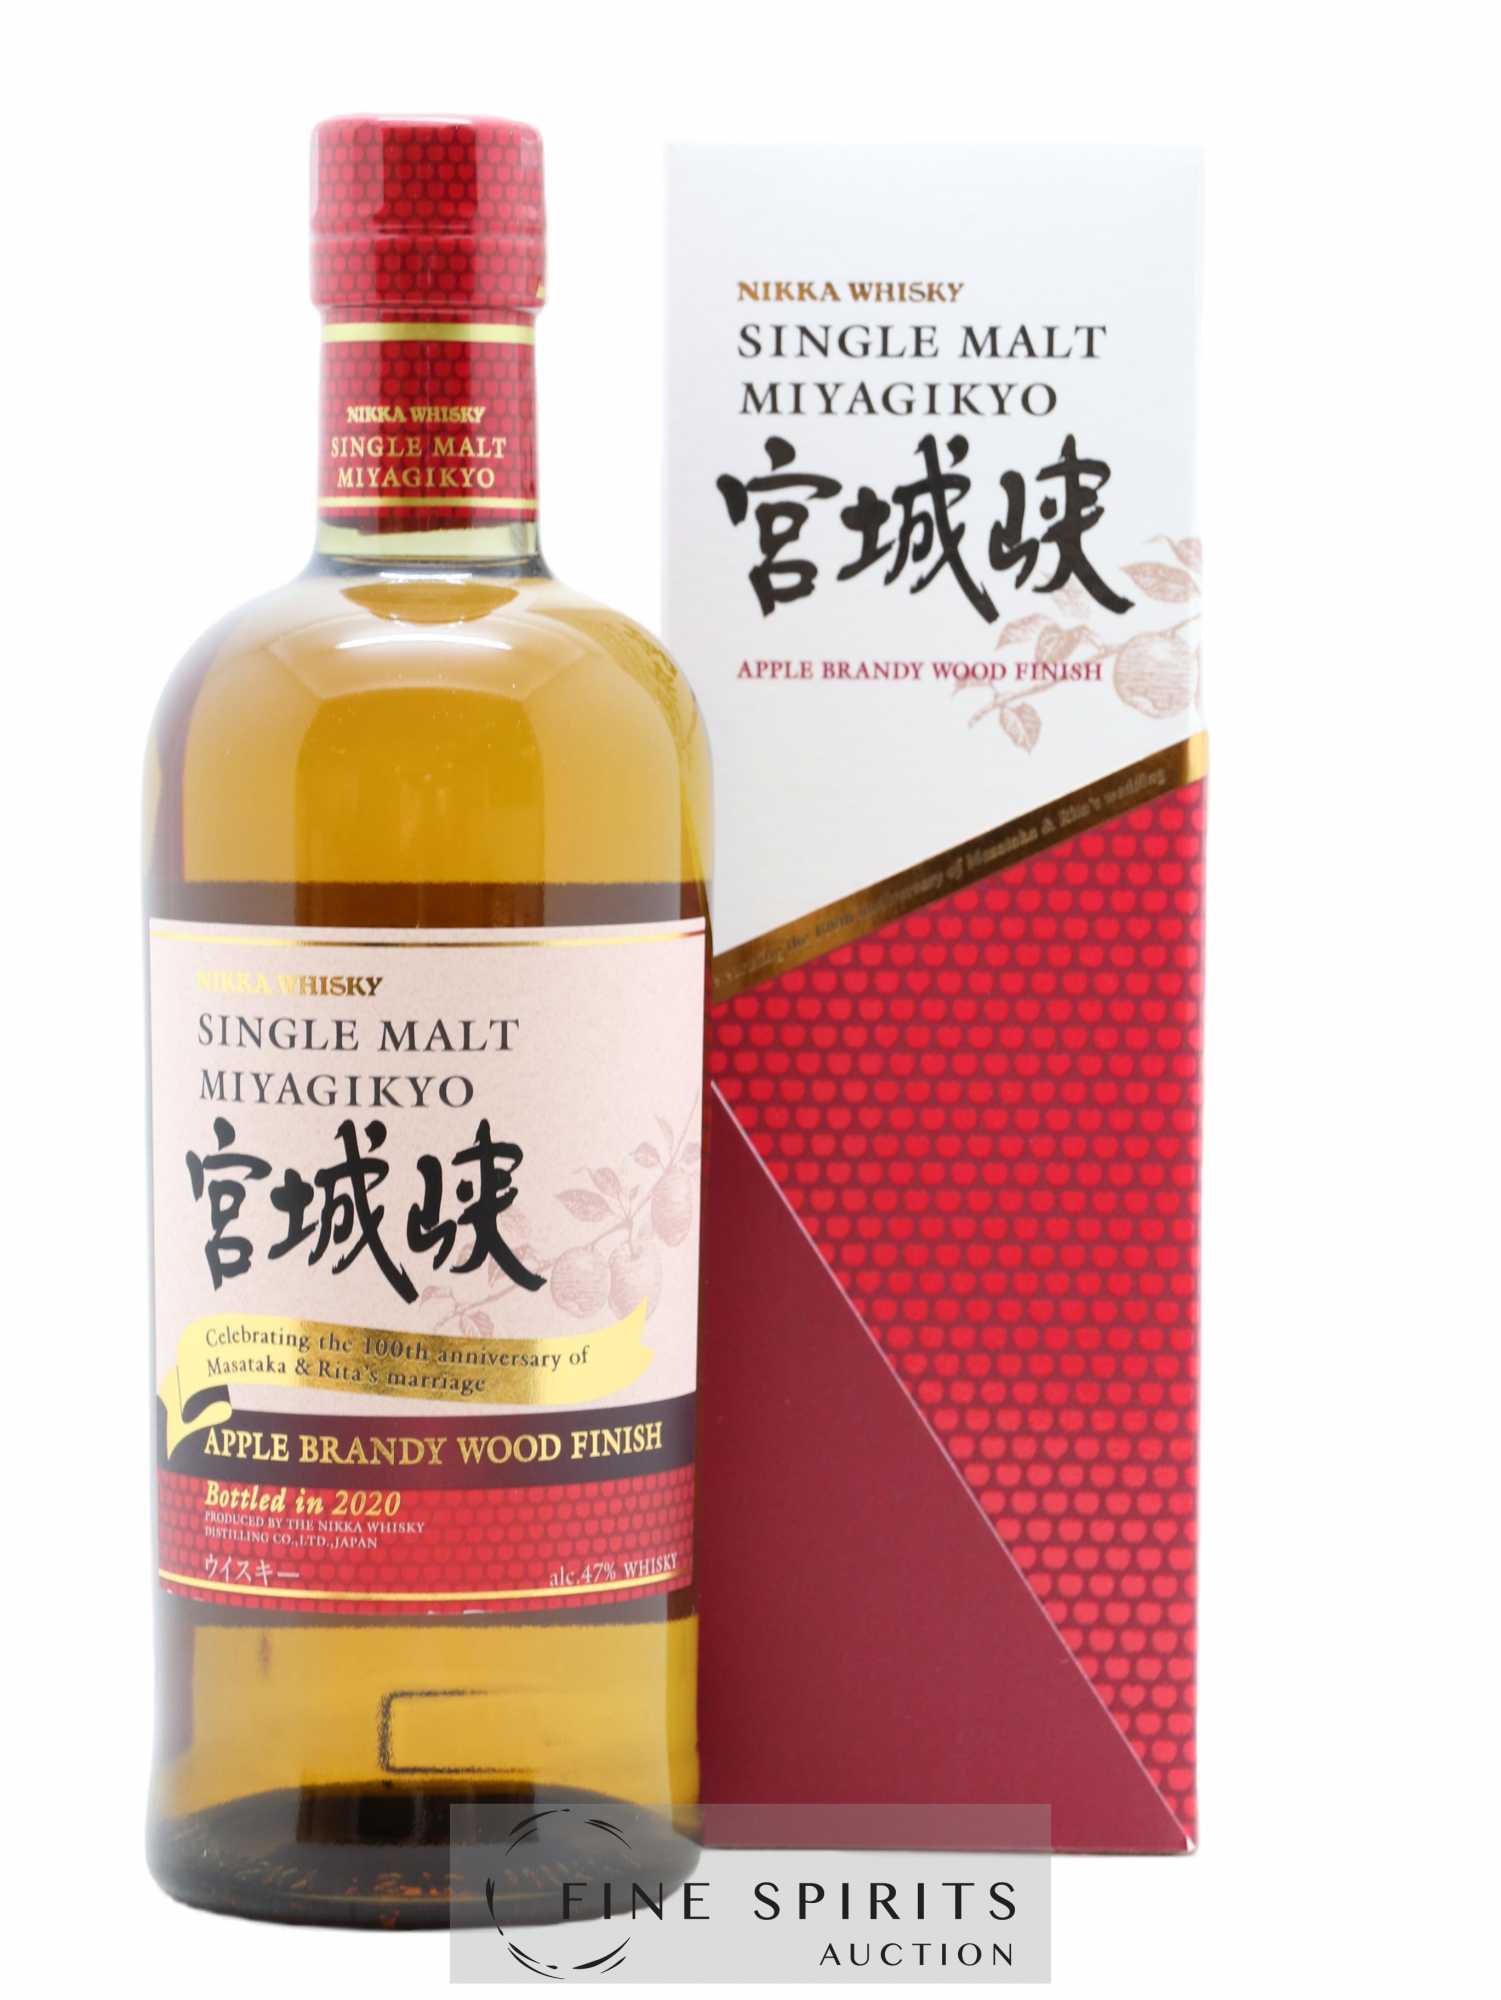 Miyagikyo Of. Apple Brandy Wood Finish bottled 2020 Nikka Whisky 